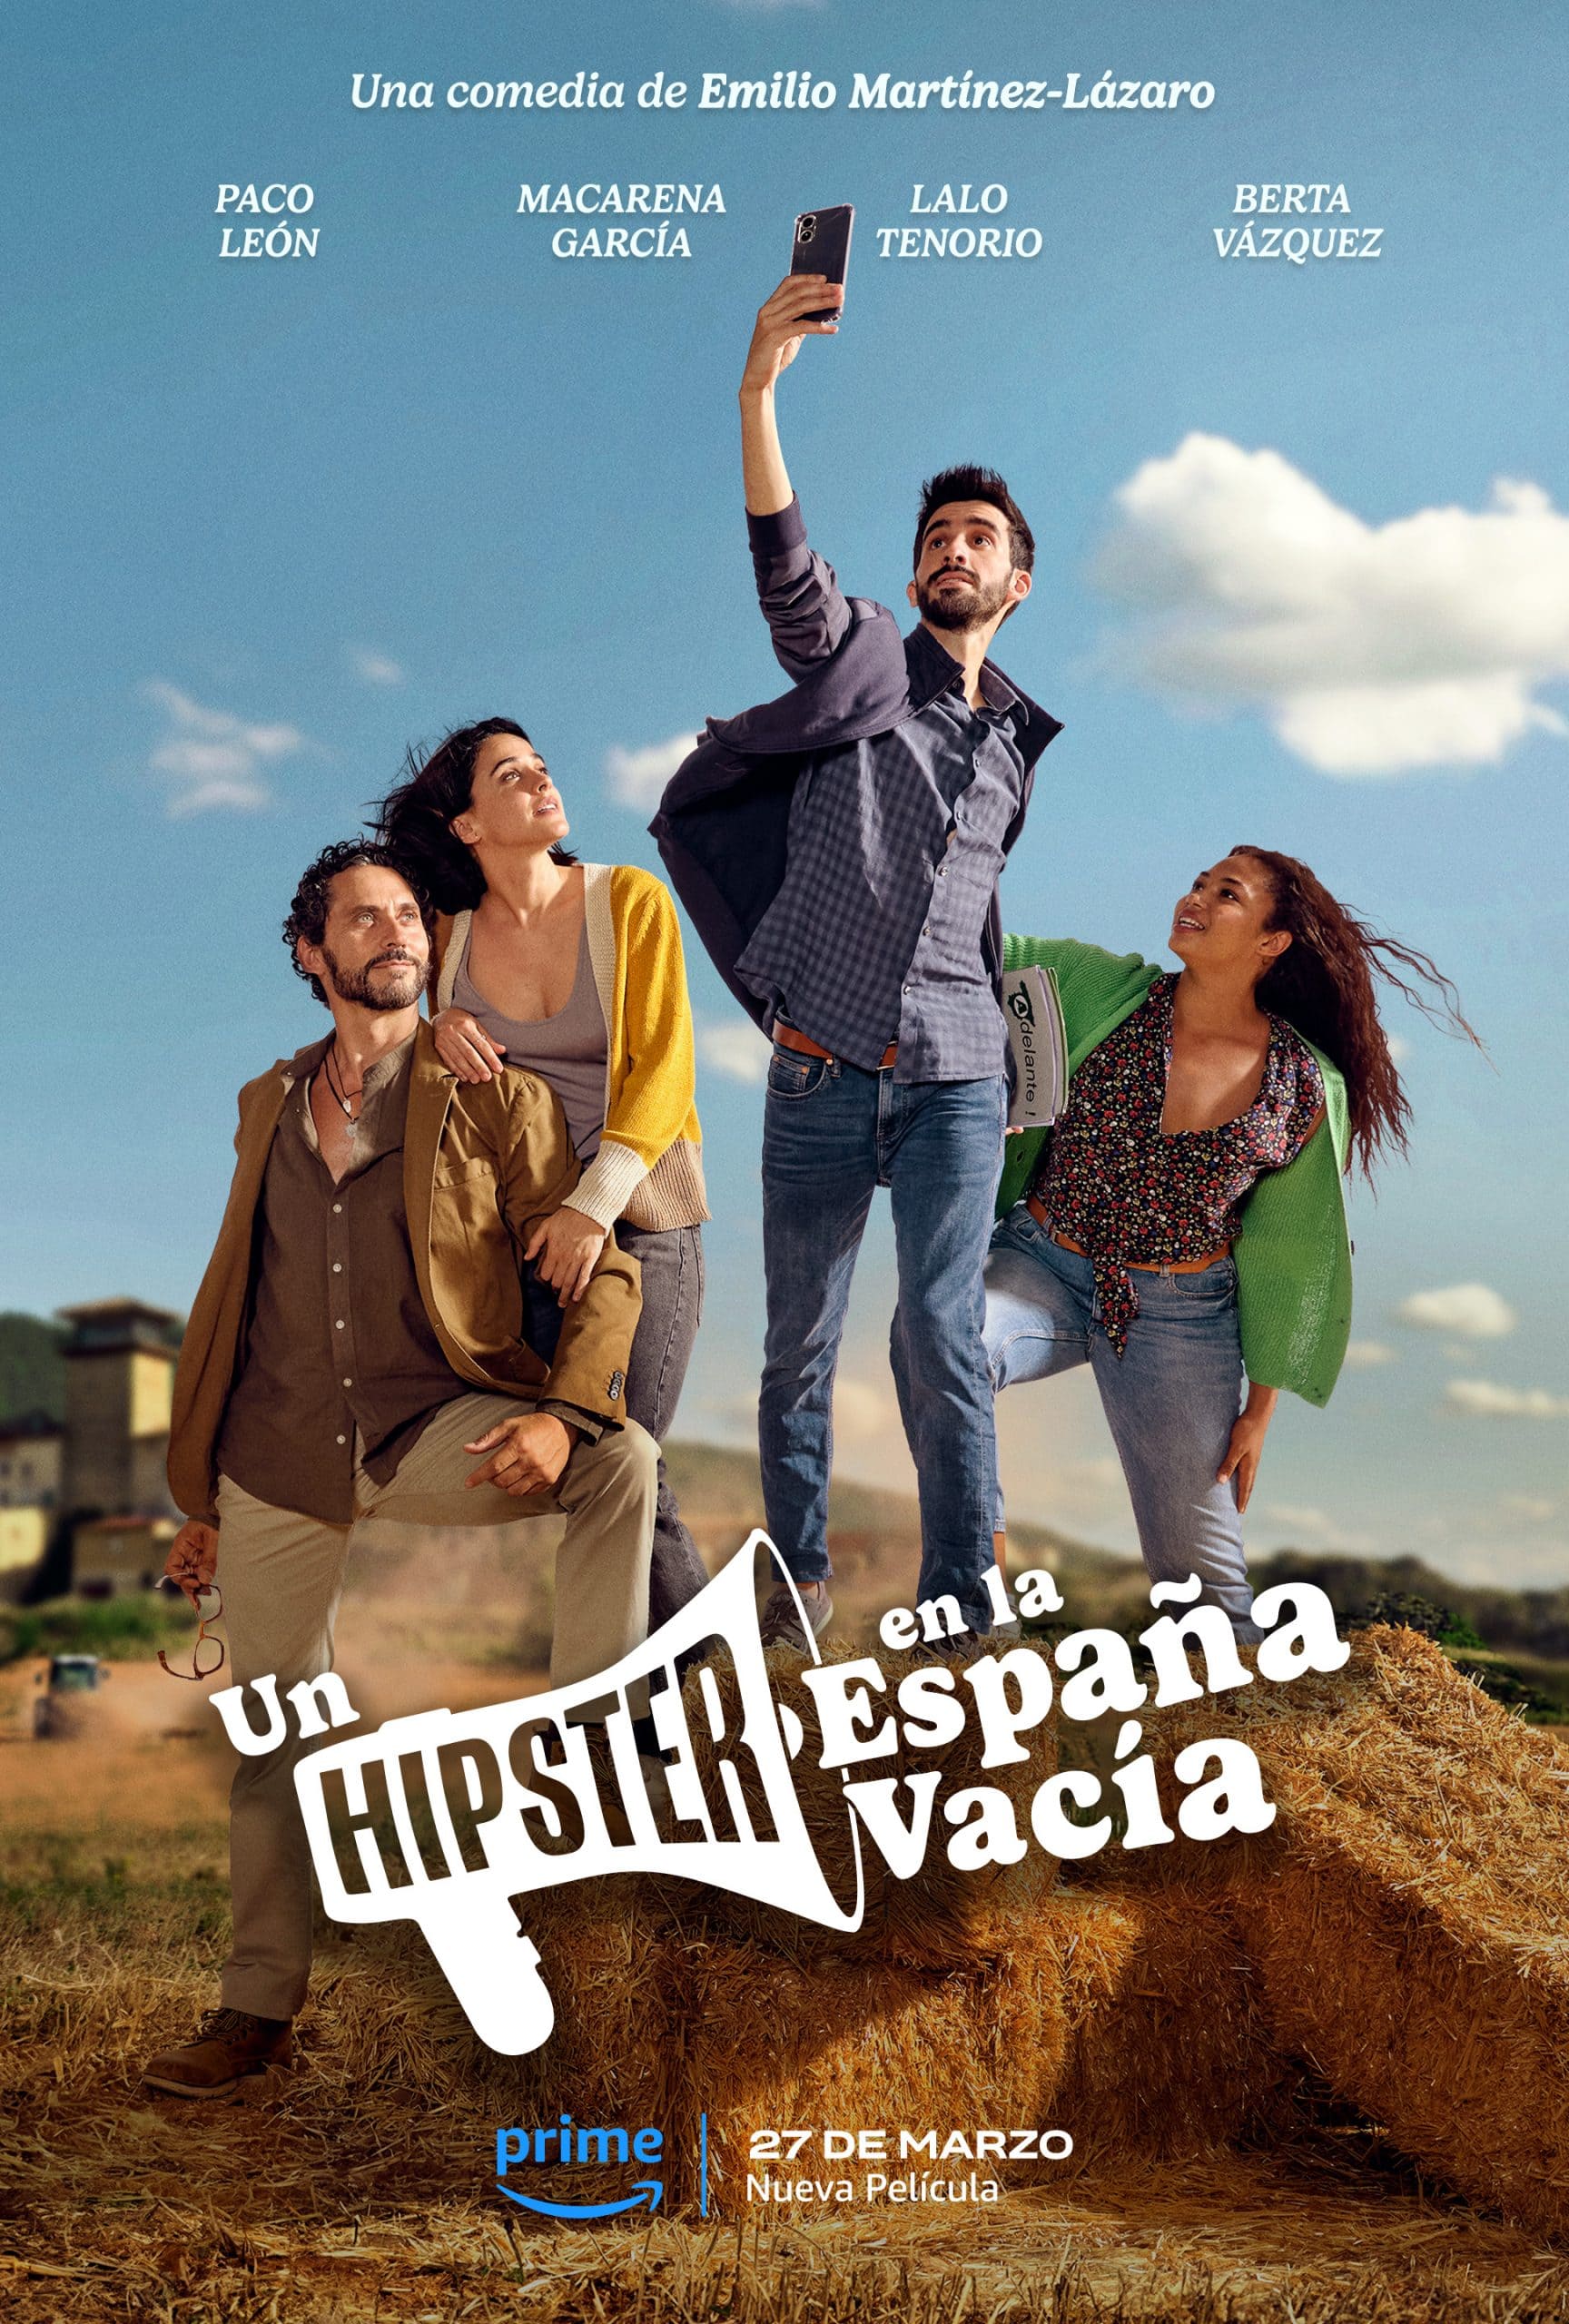 Un hipster en la España Vacía es una producción de Prime Video, en la que Enri Mür Studio ha tenido la suerte de participar